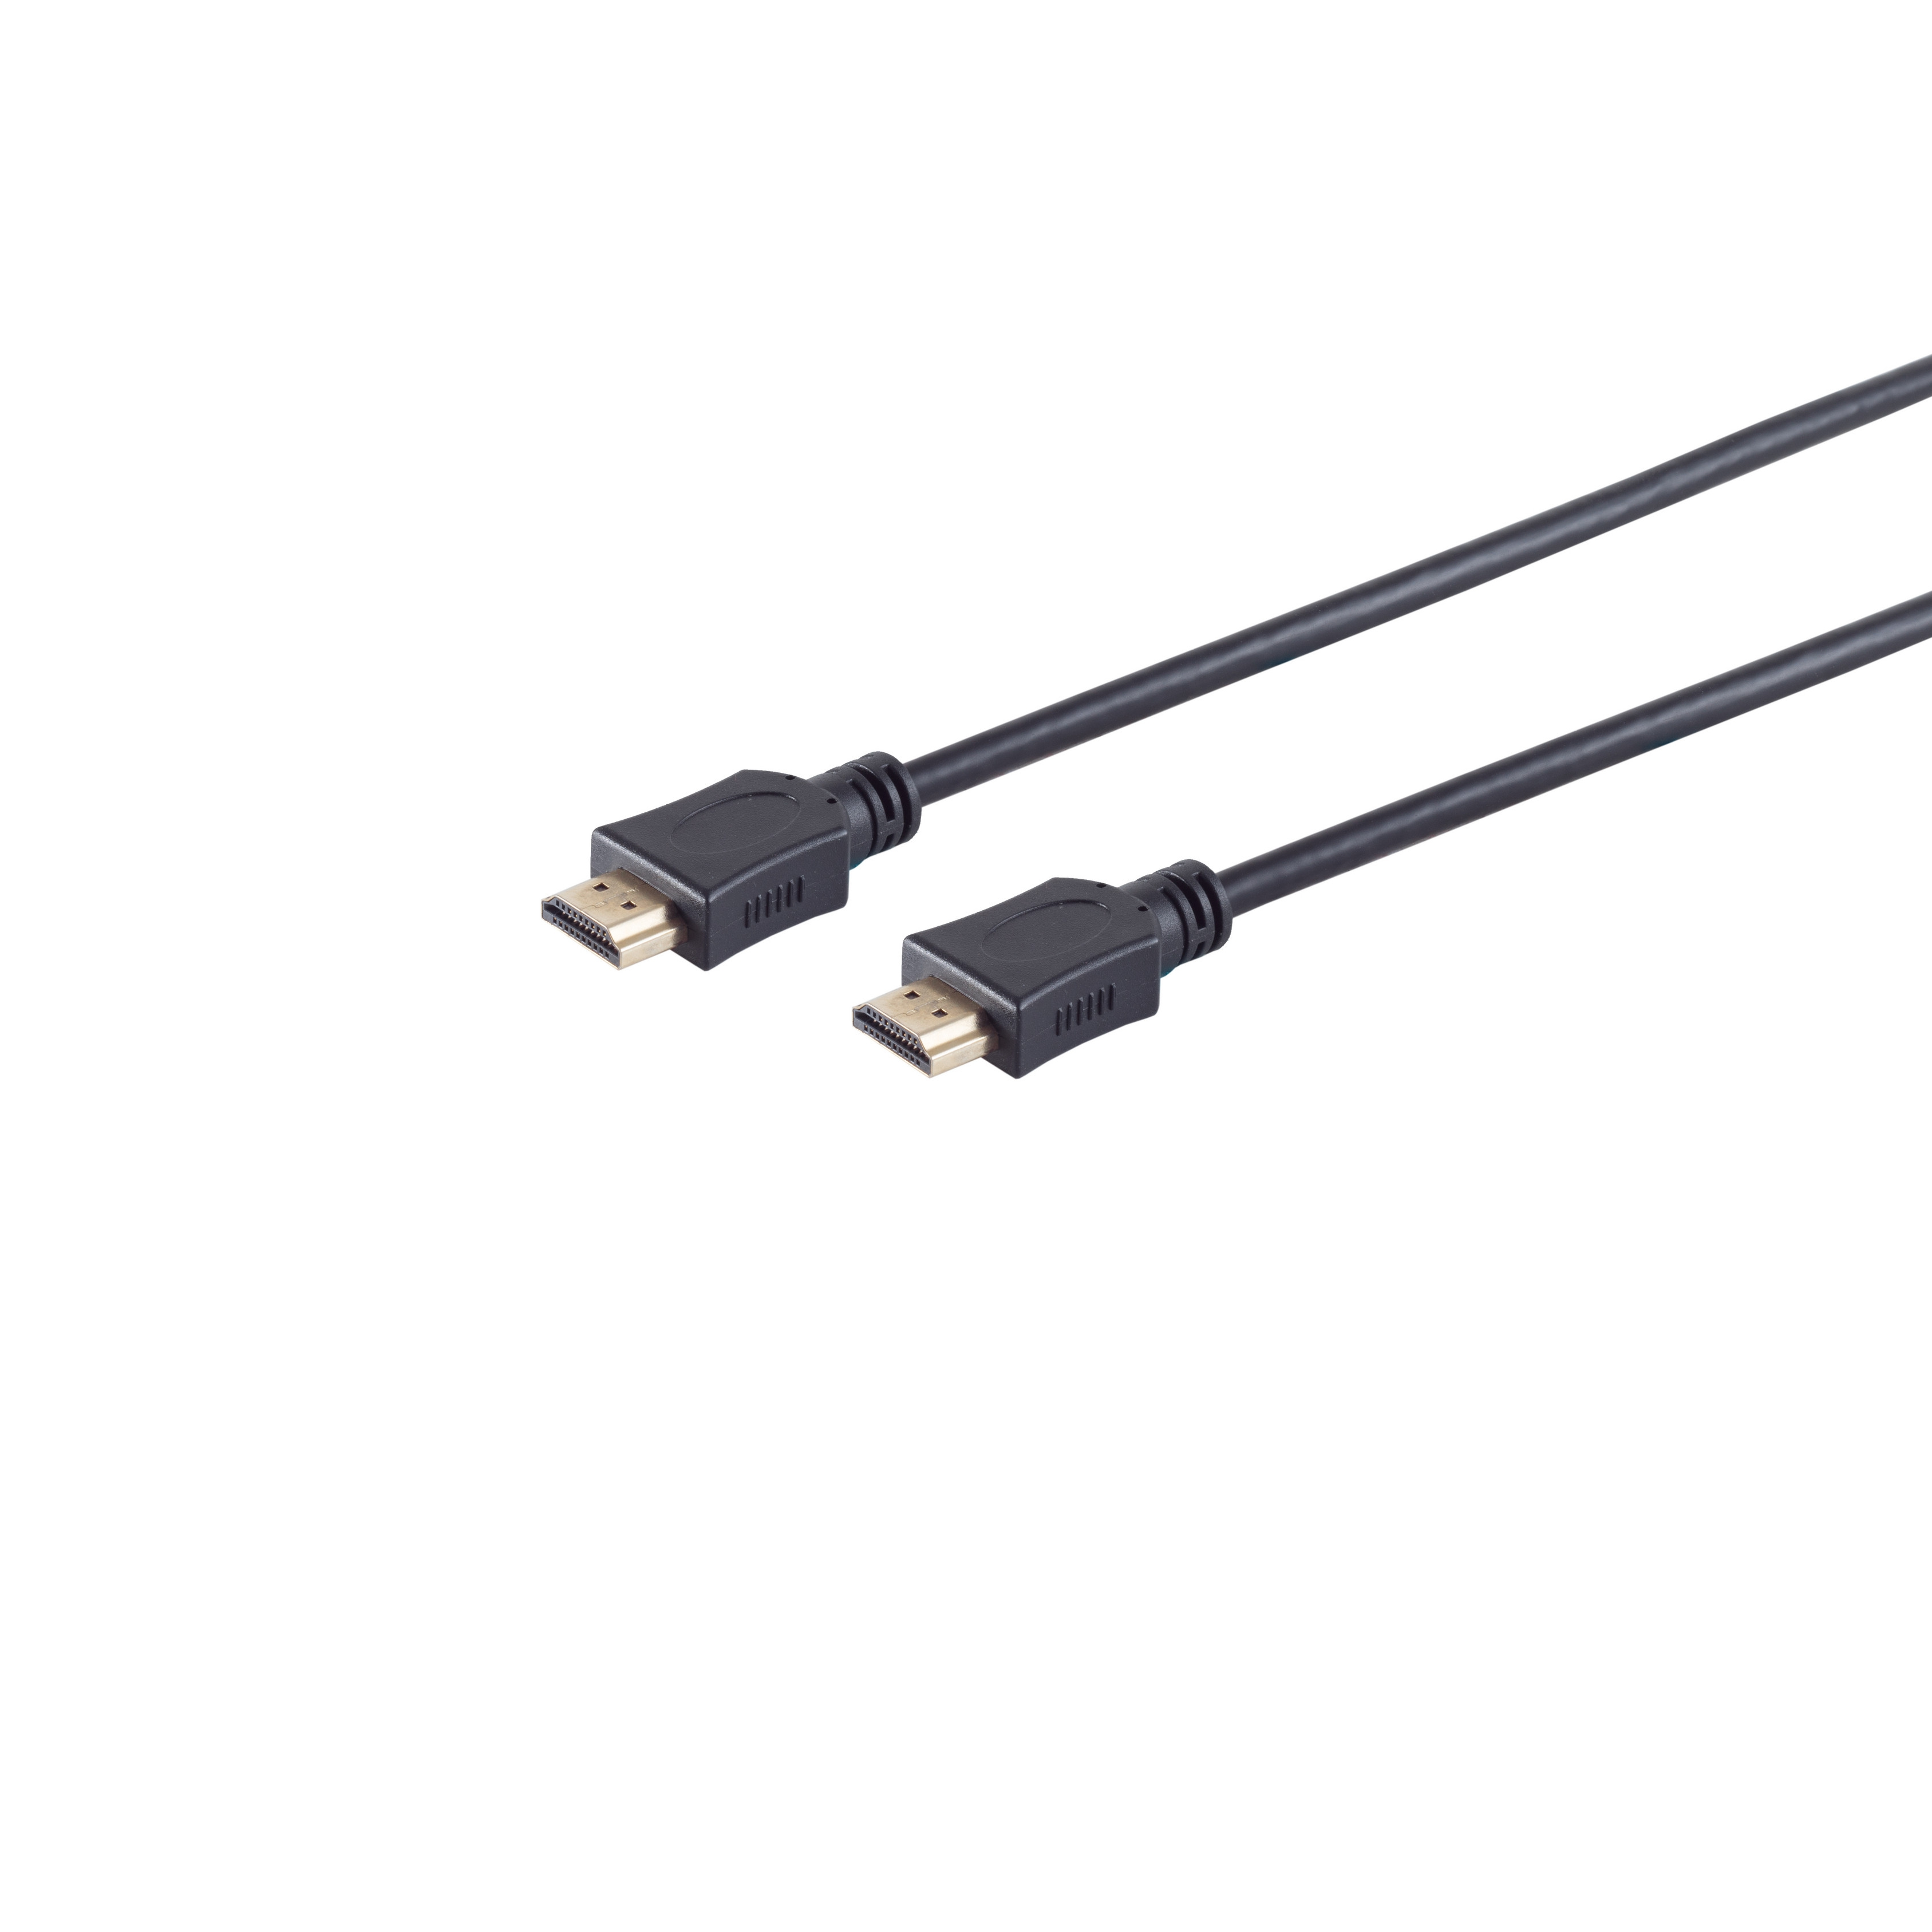 S/CONN MAXIMUM CONNECTIVITY HDMI verg. Kabel / HDMI HEAC A-Stecker HDMI A-Stecker 3m